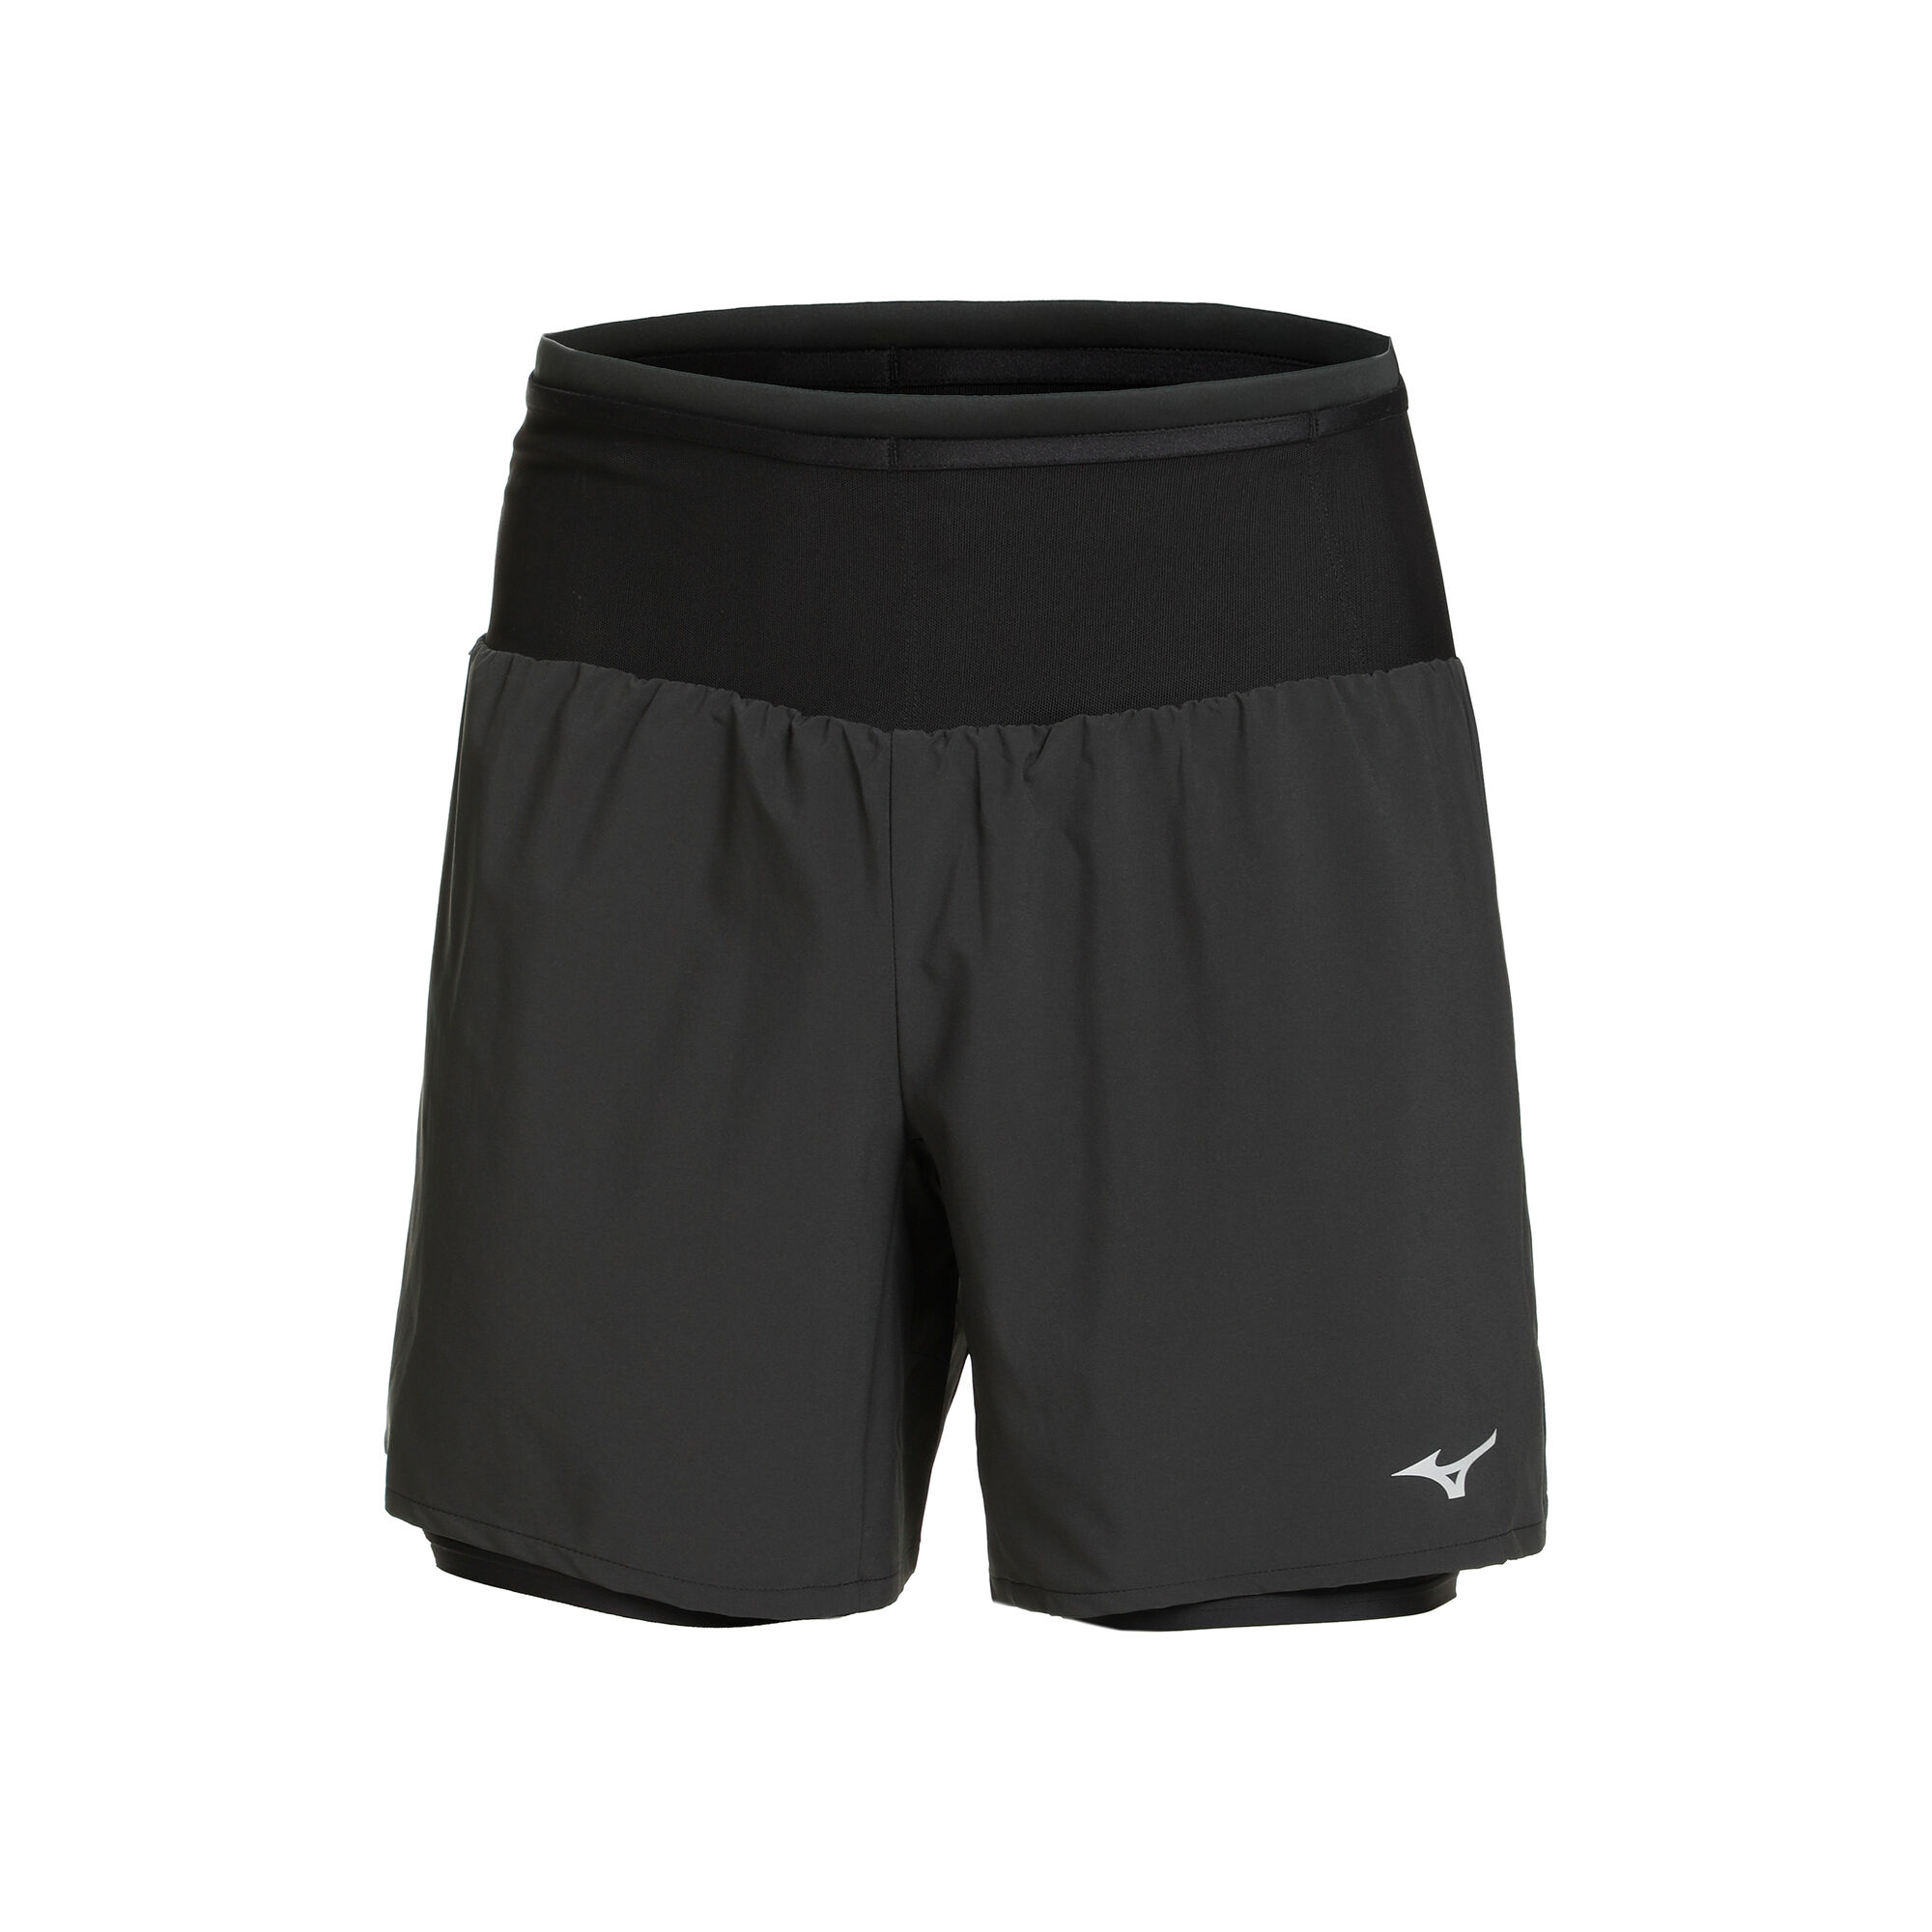 Buy Mizuno Multi Pocket 7.5 2in1 Shorts Men Black online